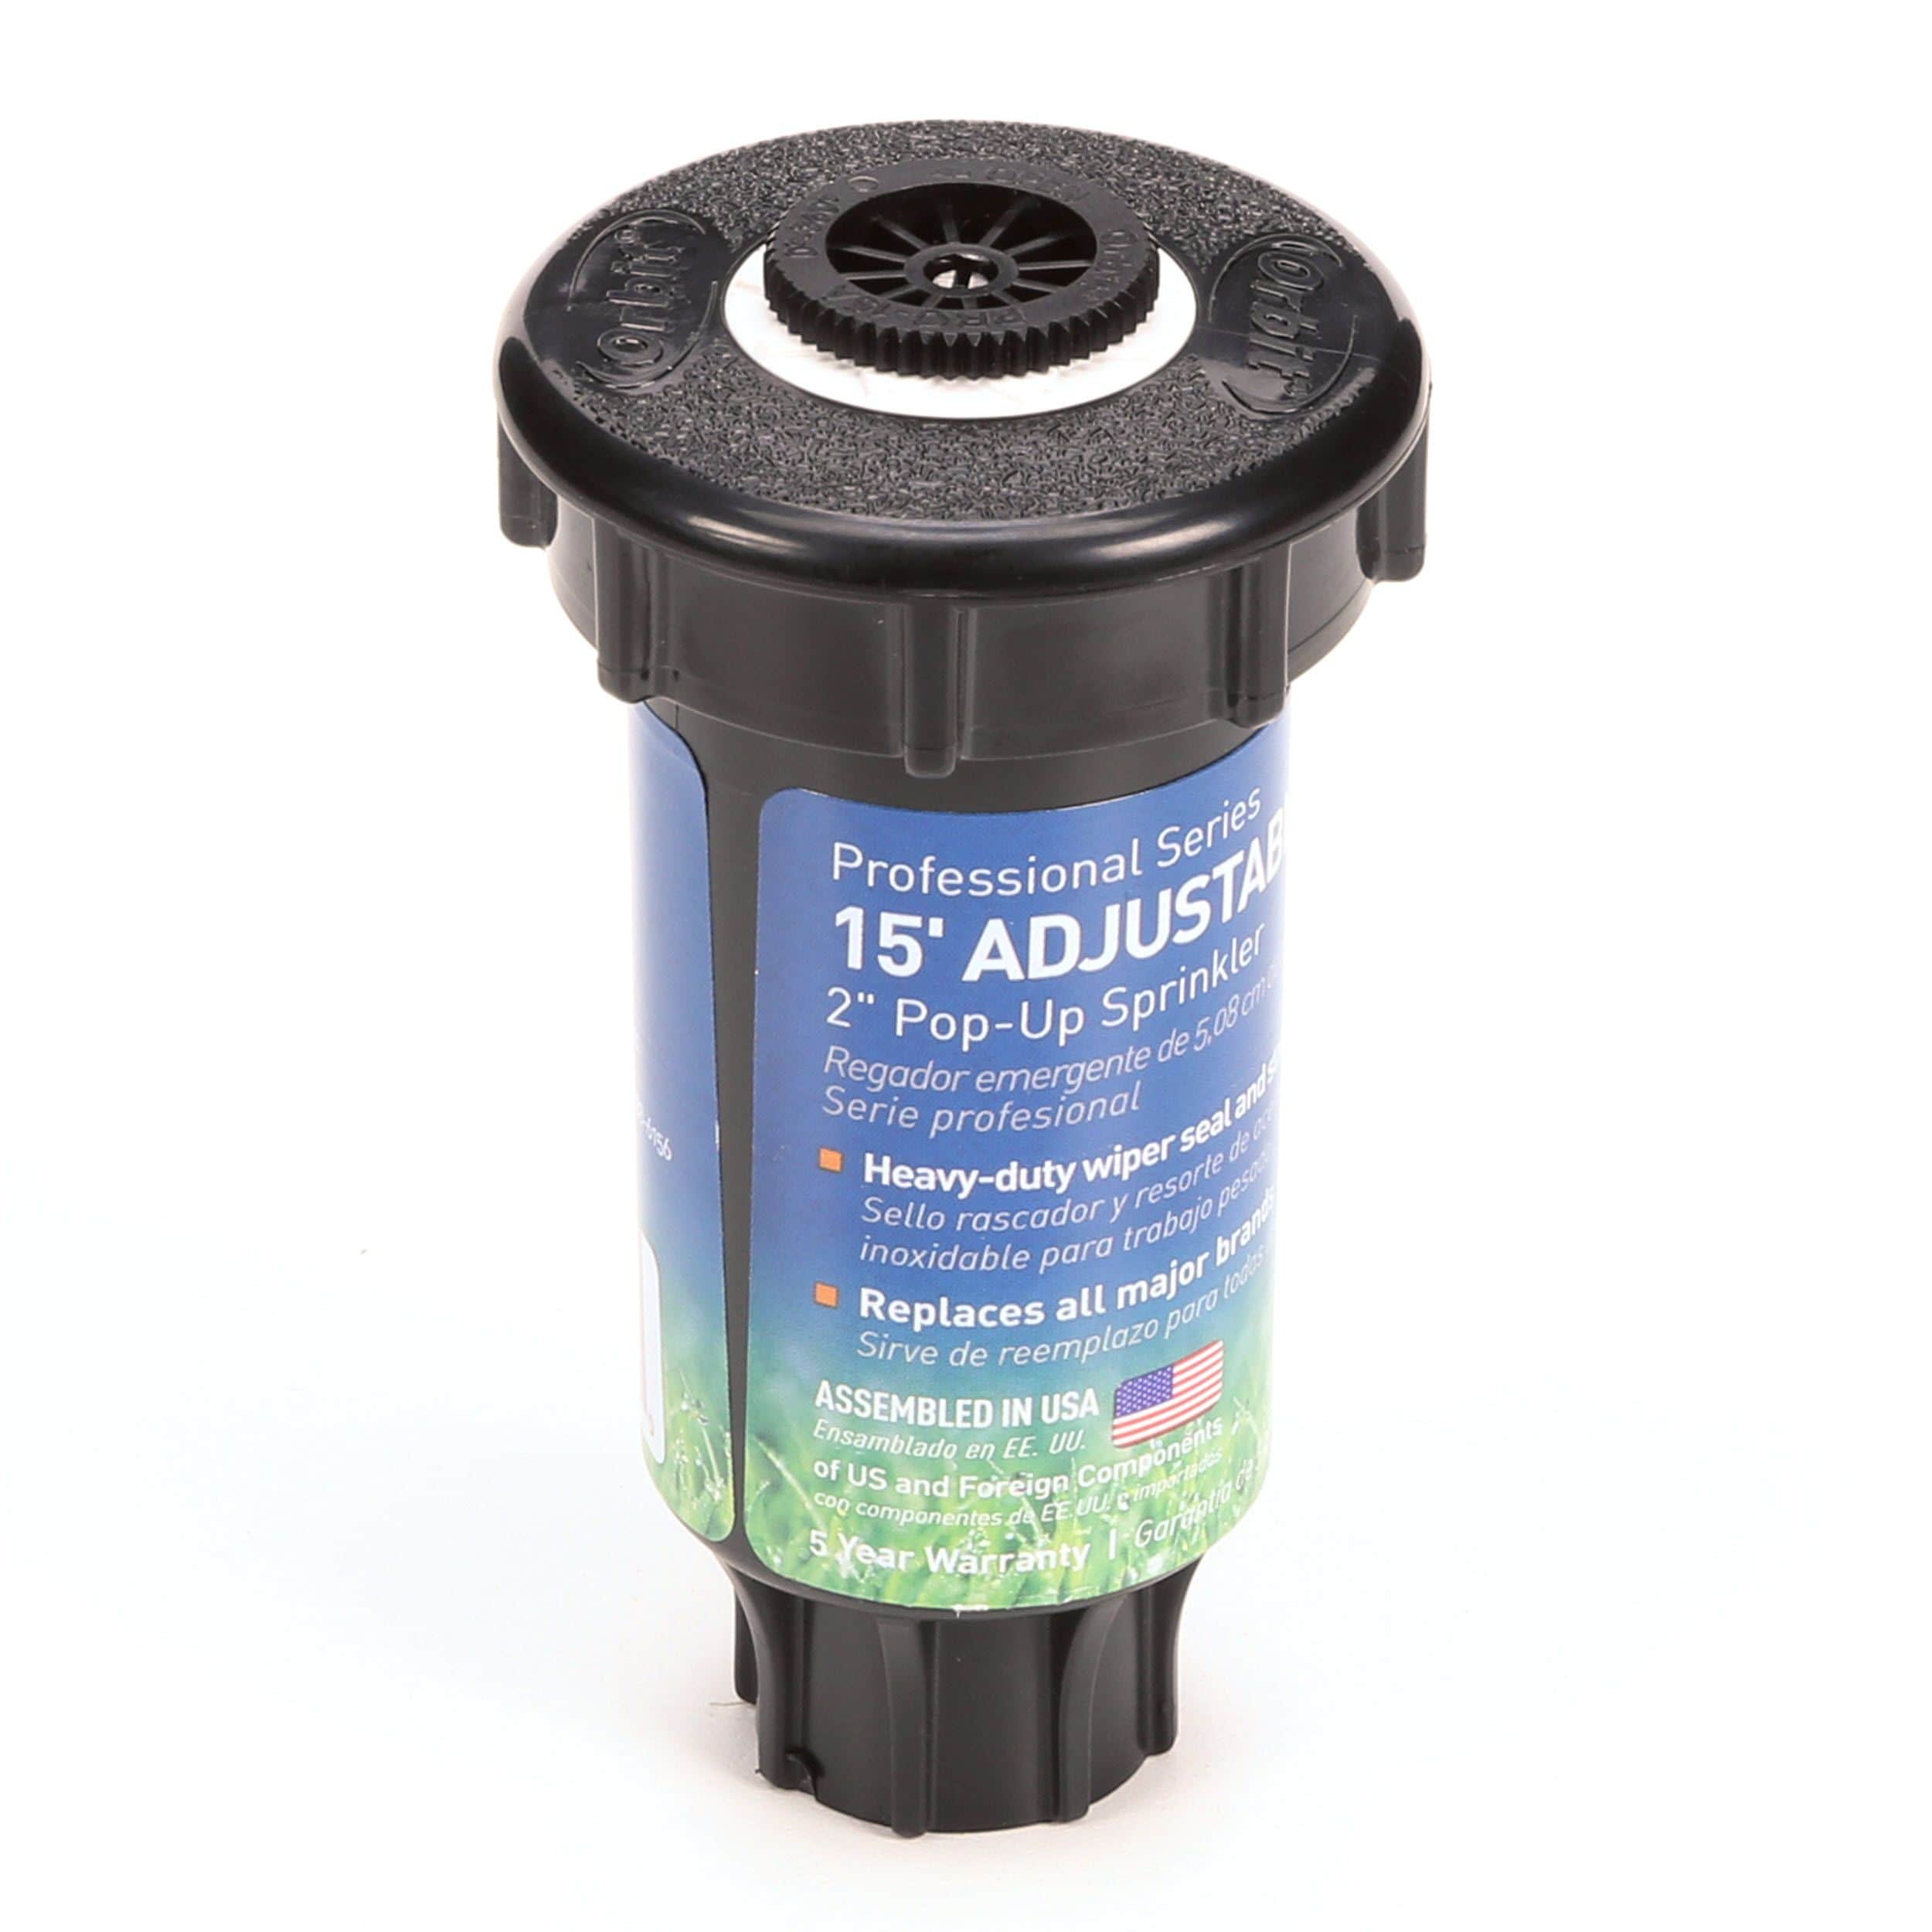 Adjustable 4 Orbit Irrigation 54116  54116L  2" Underground Sprinkler Pop-Up 